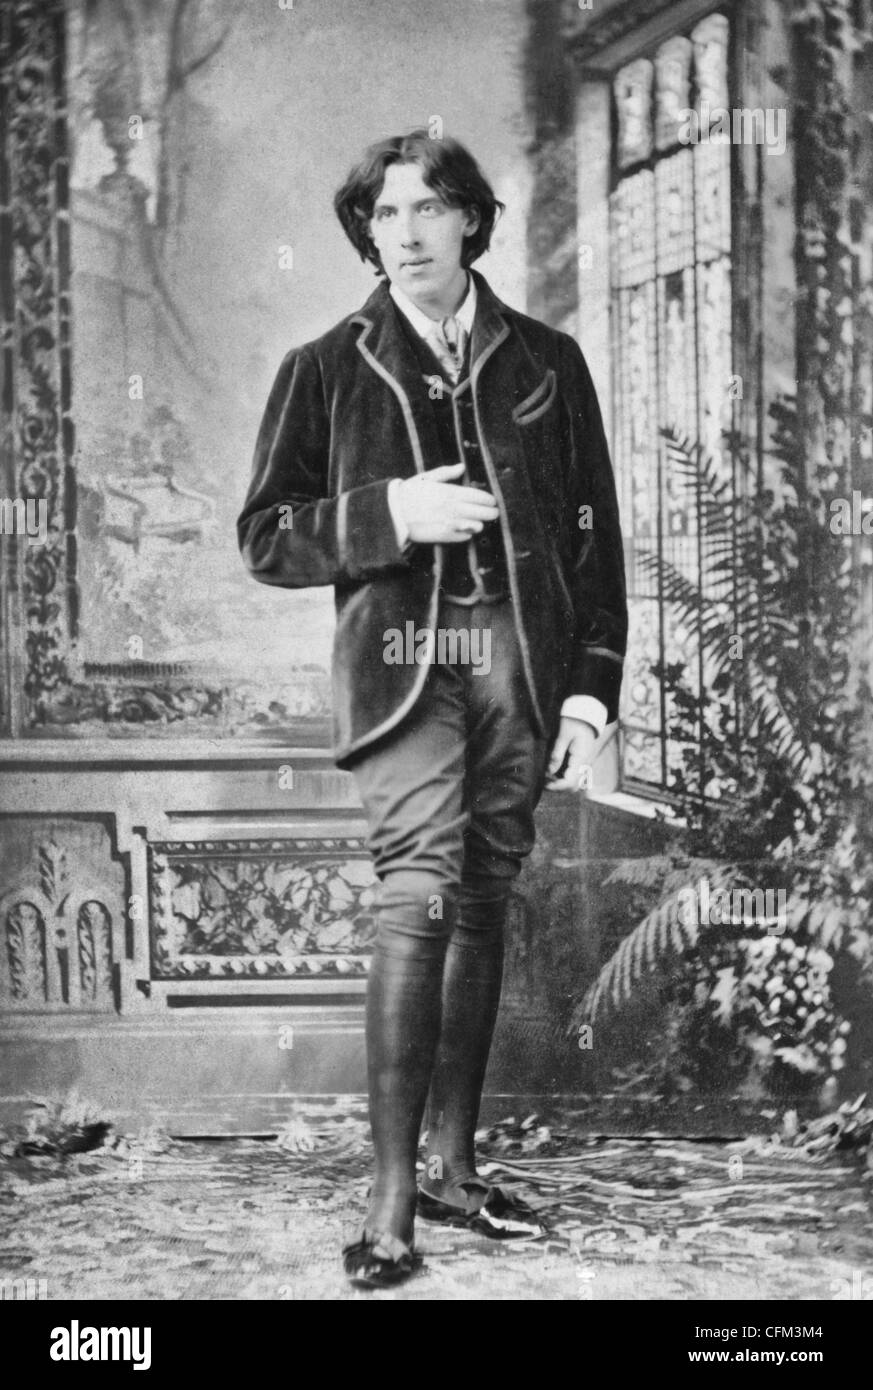 New 5x7 Photo Renown Irish Writer and Playwright Oscar Wilde 